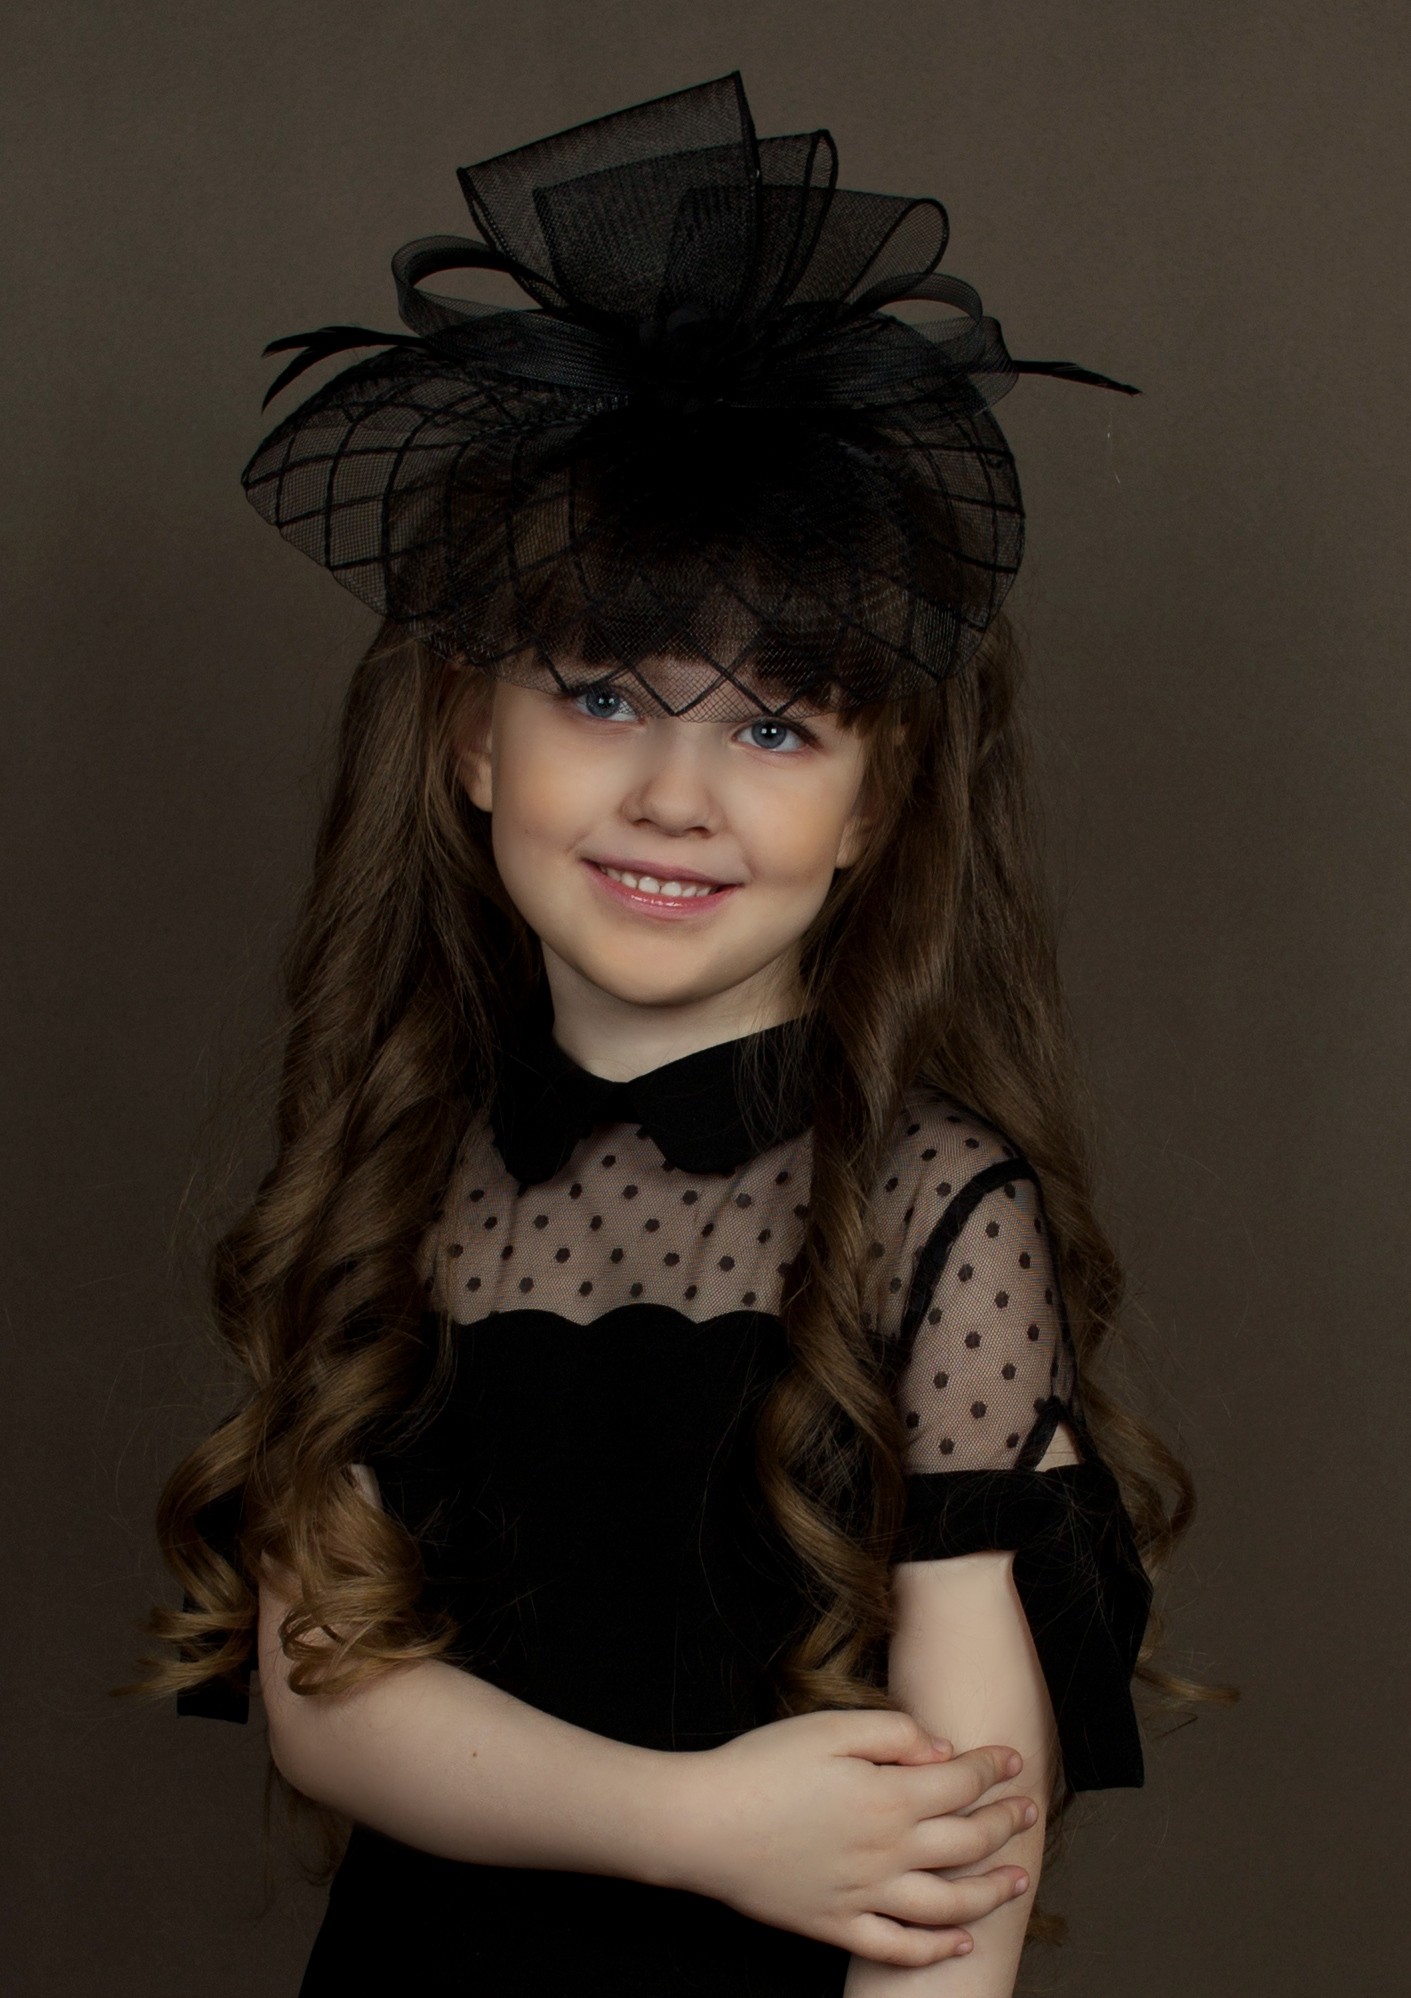 Марианна Сова - аккредитованная модель для участия в подиумных показах на Междунродной Детской Неделе моды